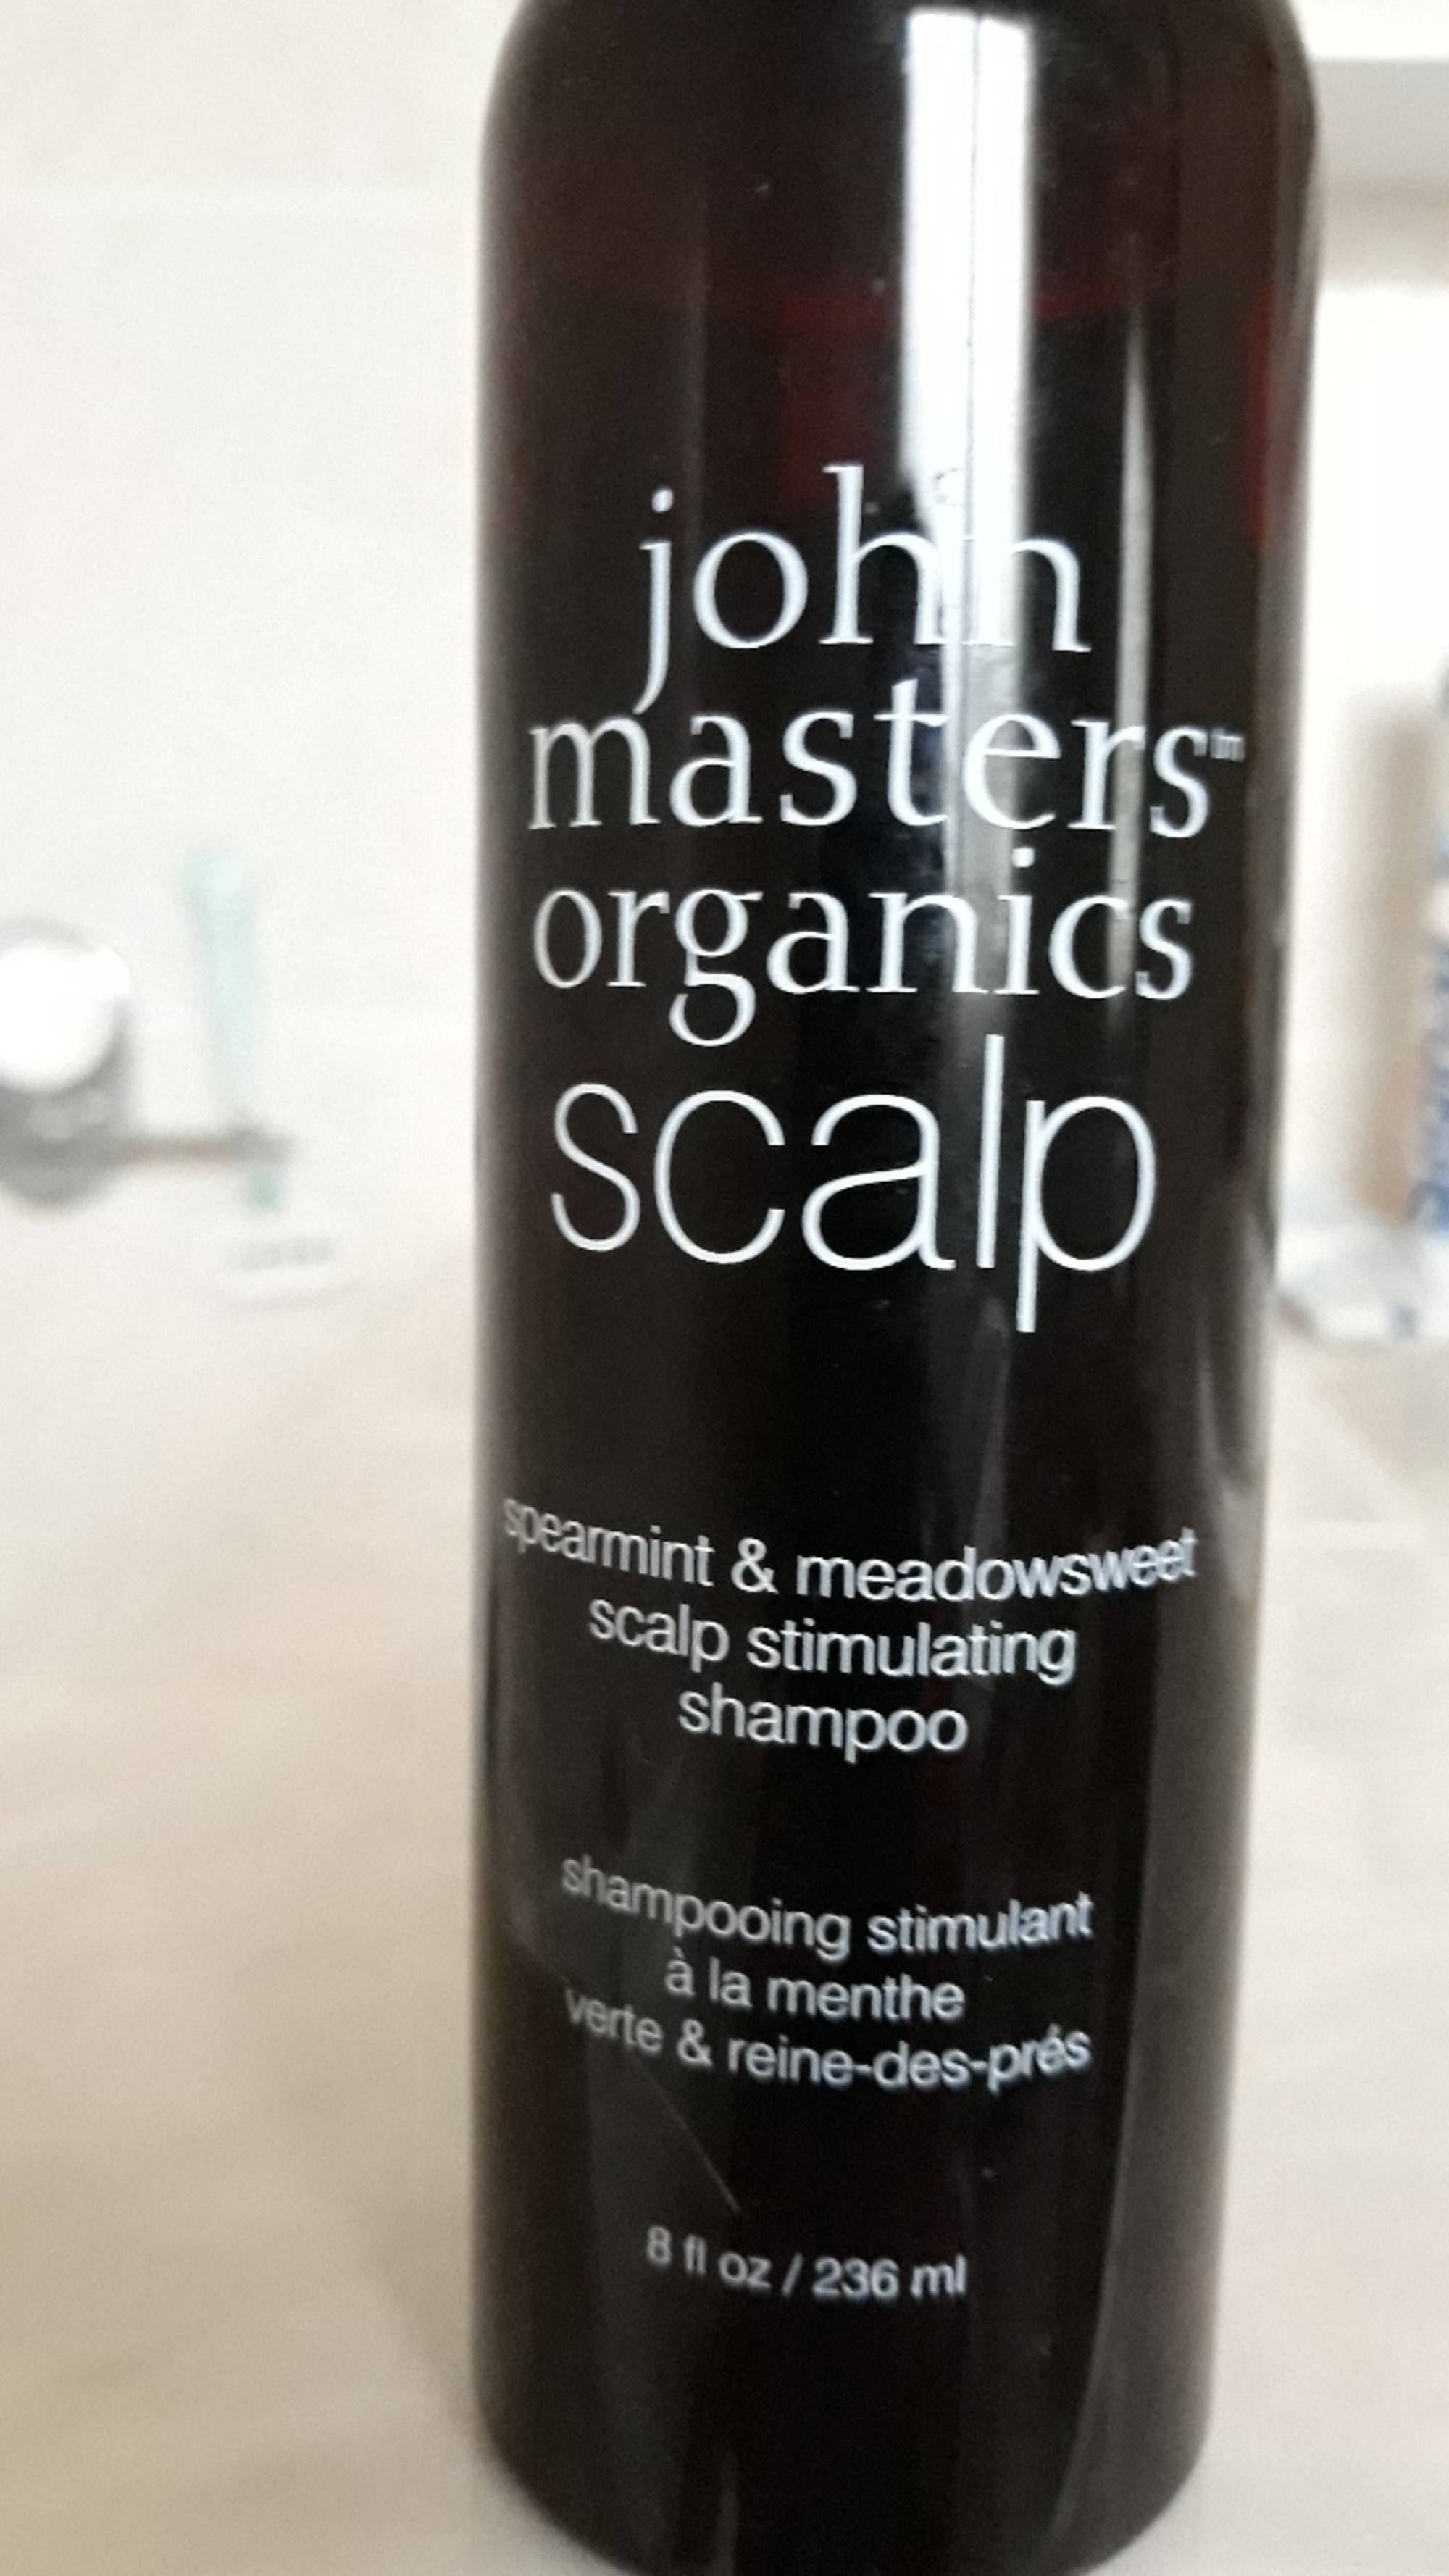 JOHN MASTERS ORGANICS - Scalp - Shampooing stimulant à la menthe verte & reine-des-prés